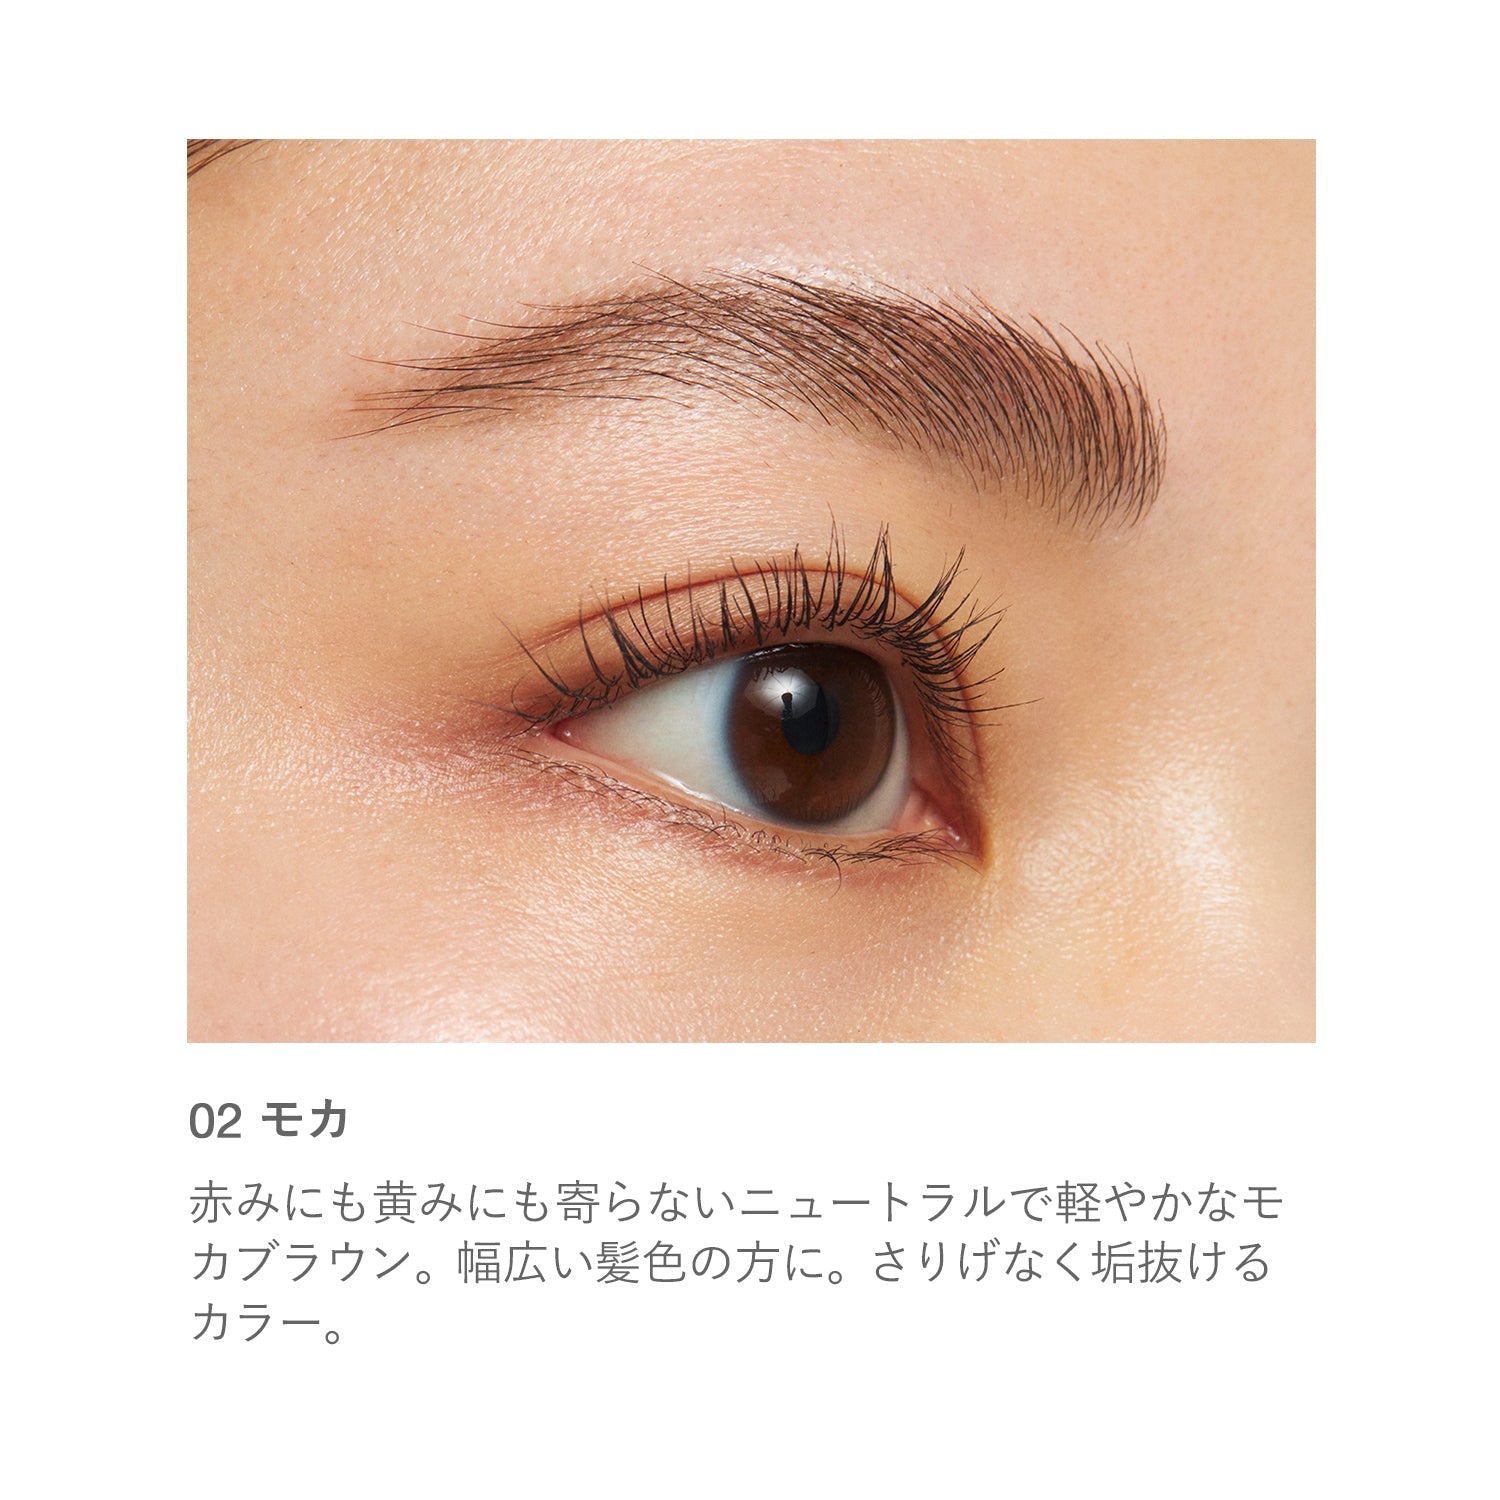 RMK Eyebrow - Ichiban Mart